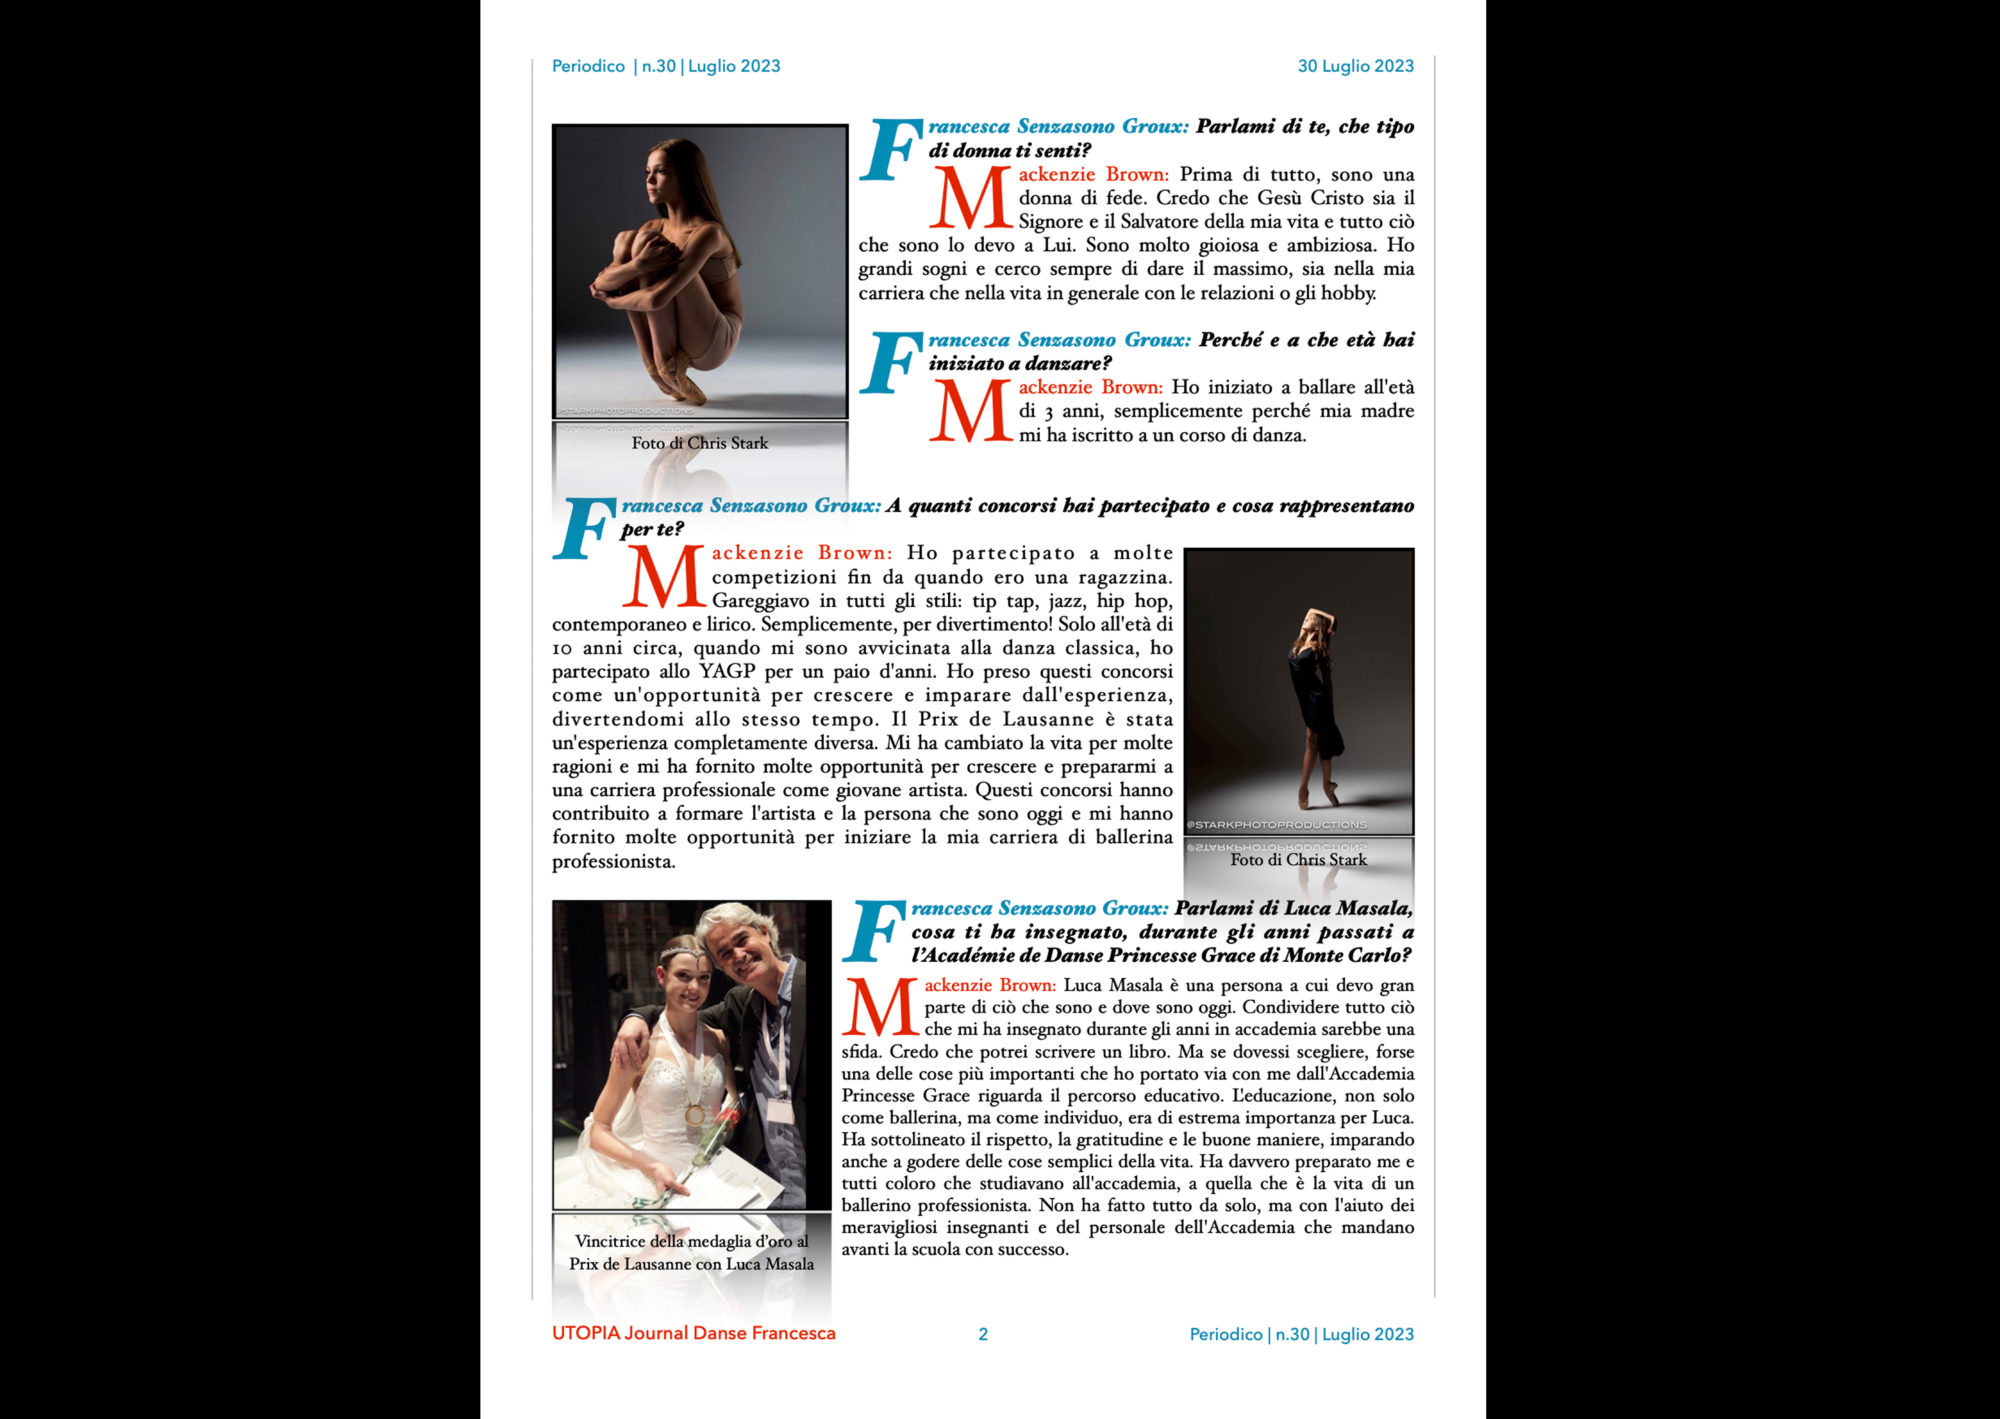 ©UTOPIA Journal Danse Francesca Periodico n.30 30 Luglio 2023 pagina 2